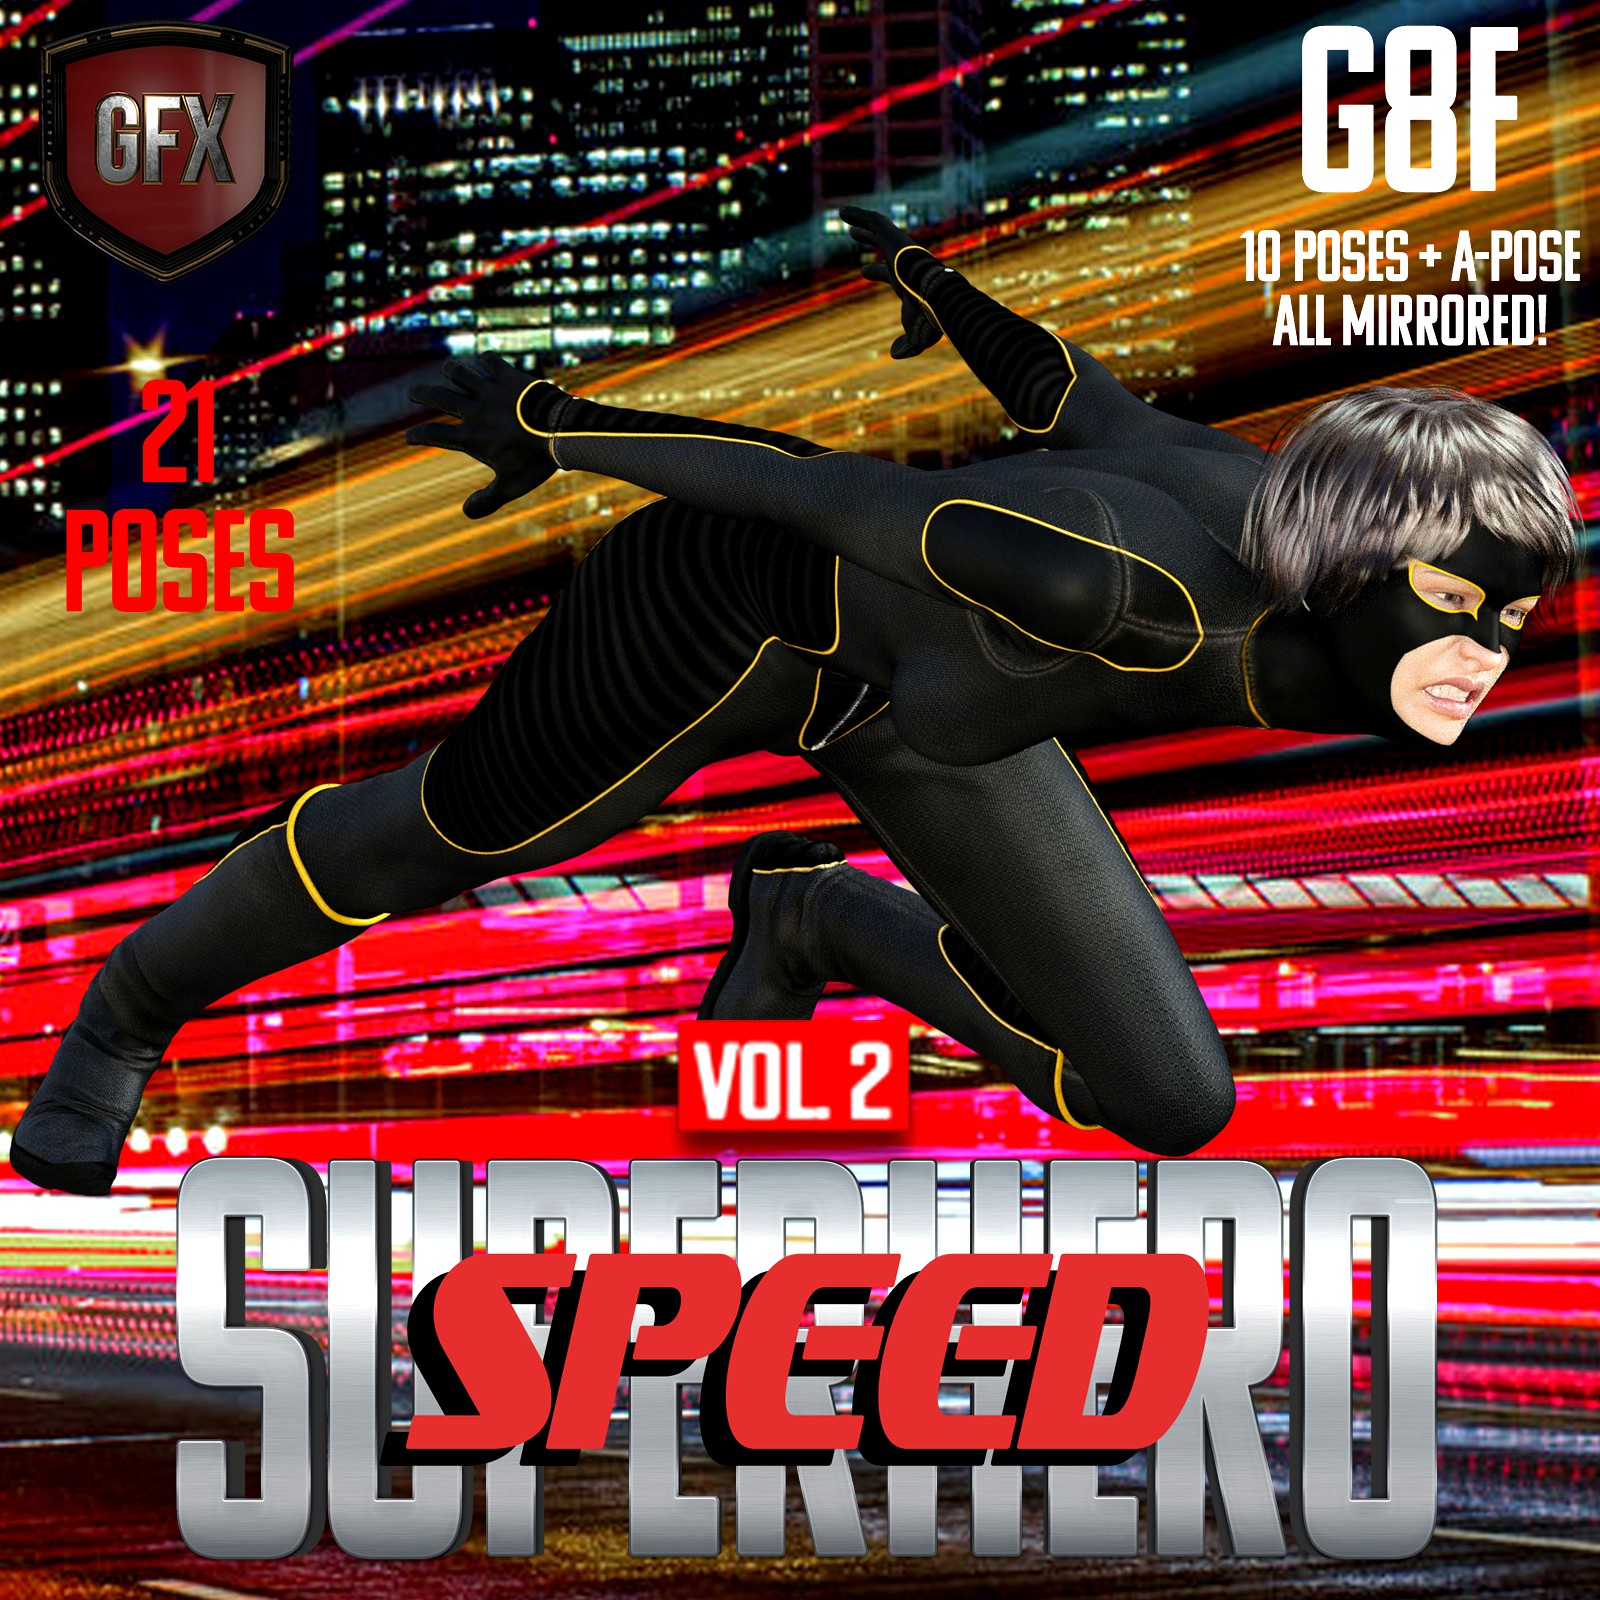 SuperHero Speed for G8F Volume 2